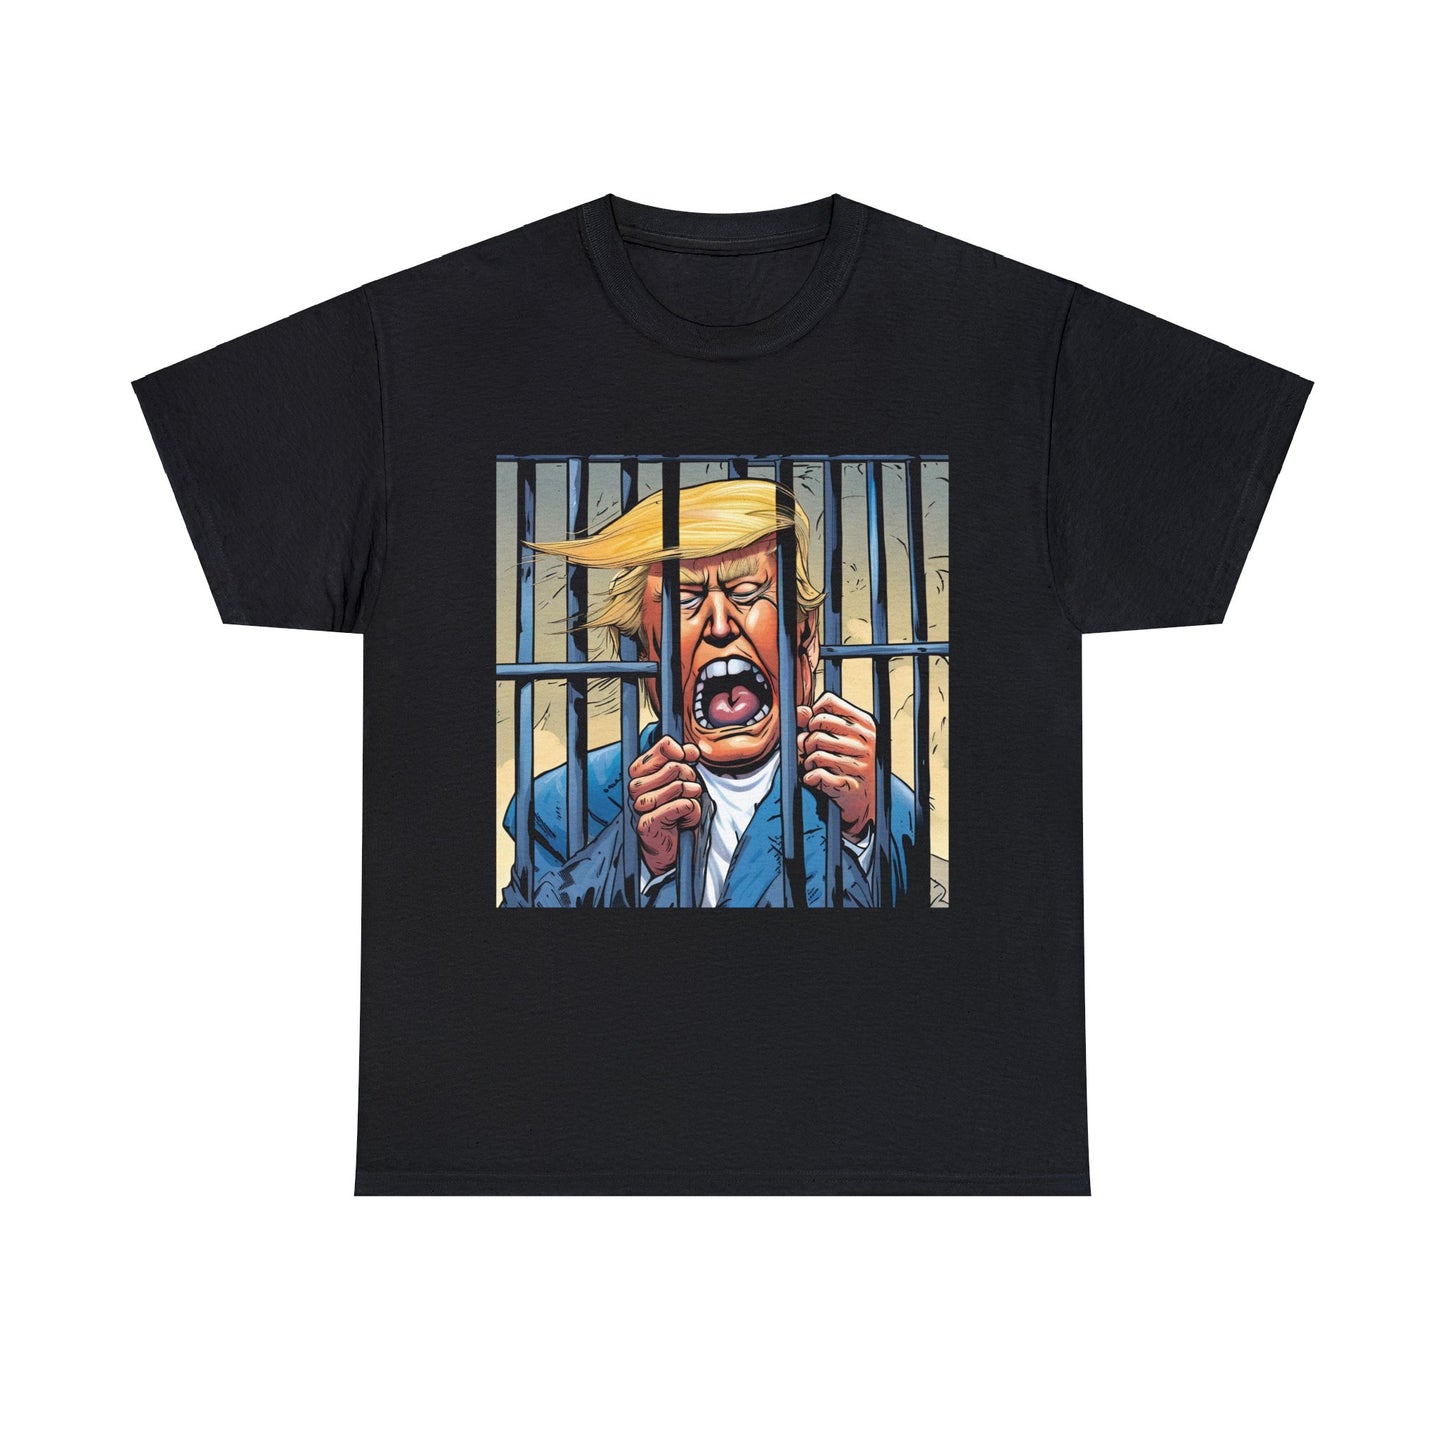 Trump behind bars, cartoon #1